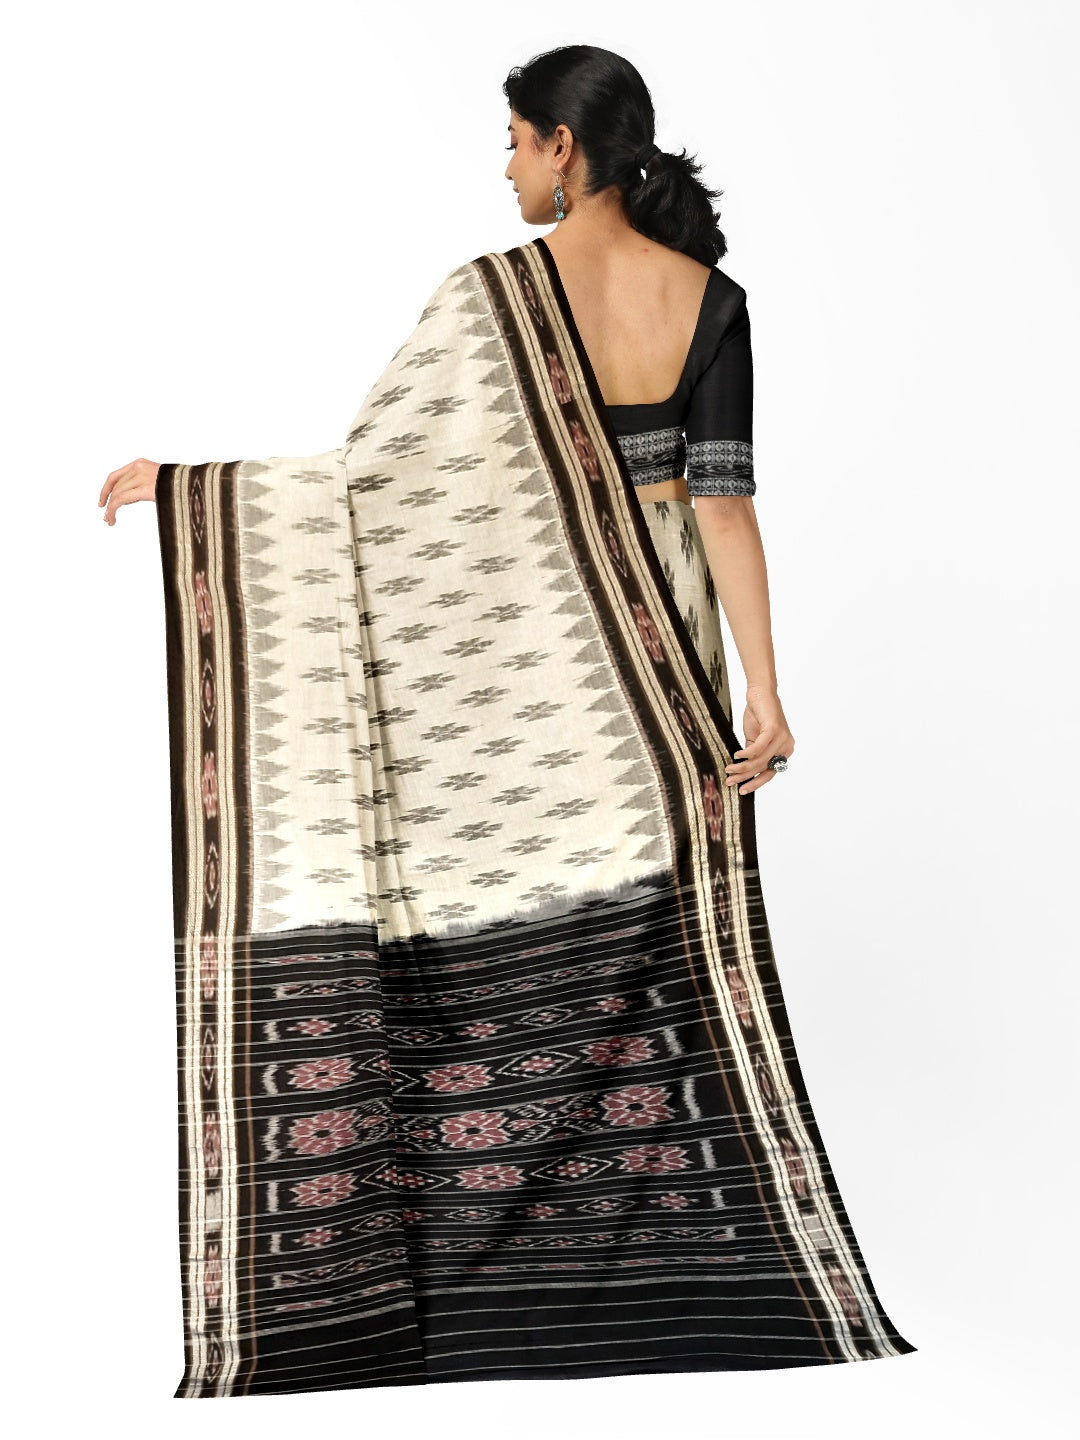 White and Black Cotton Odisha Ikat saree  with mix match cotton ikat blouse